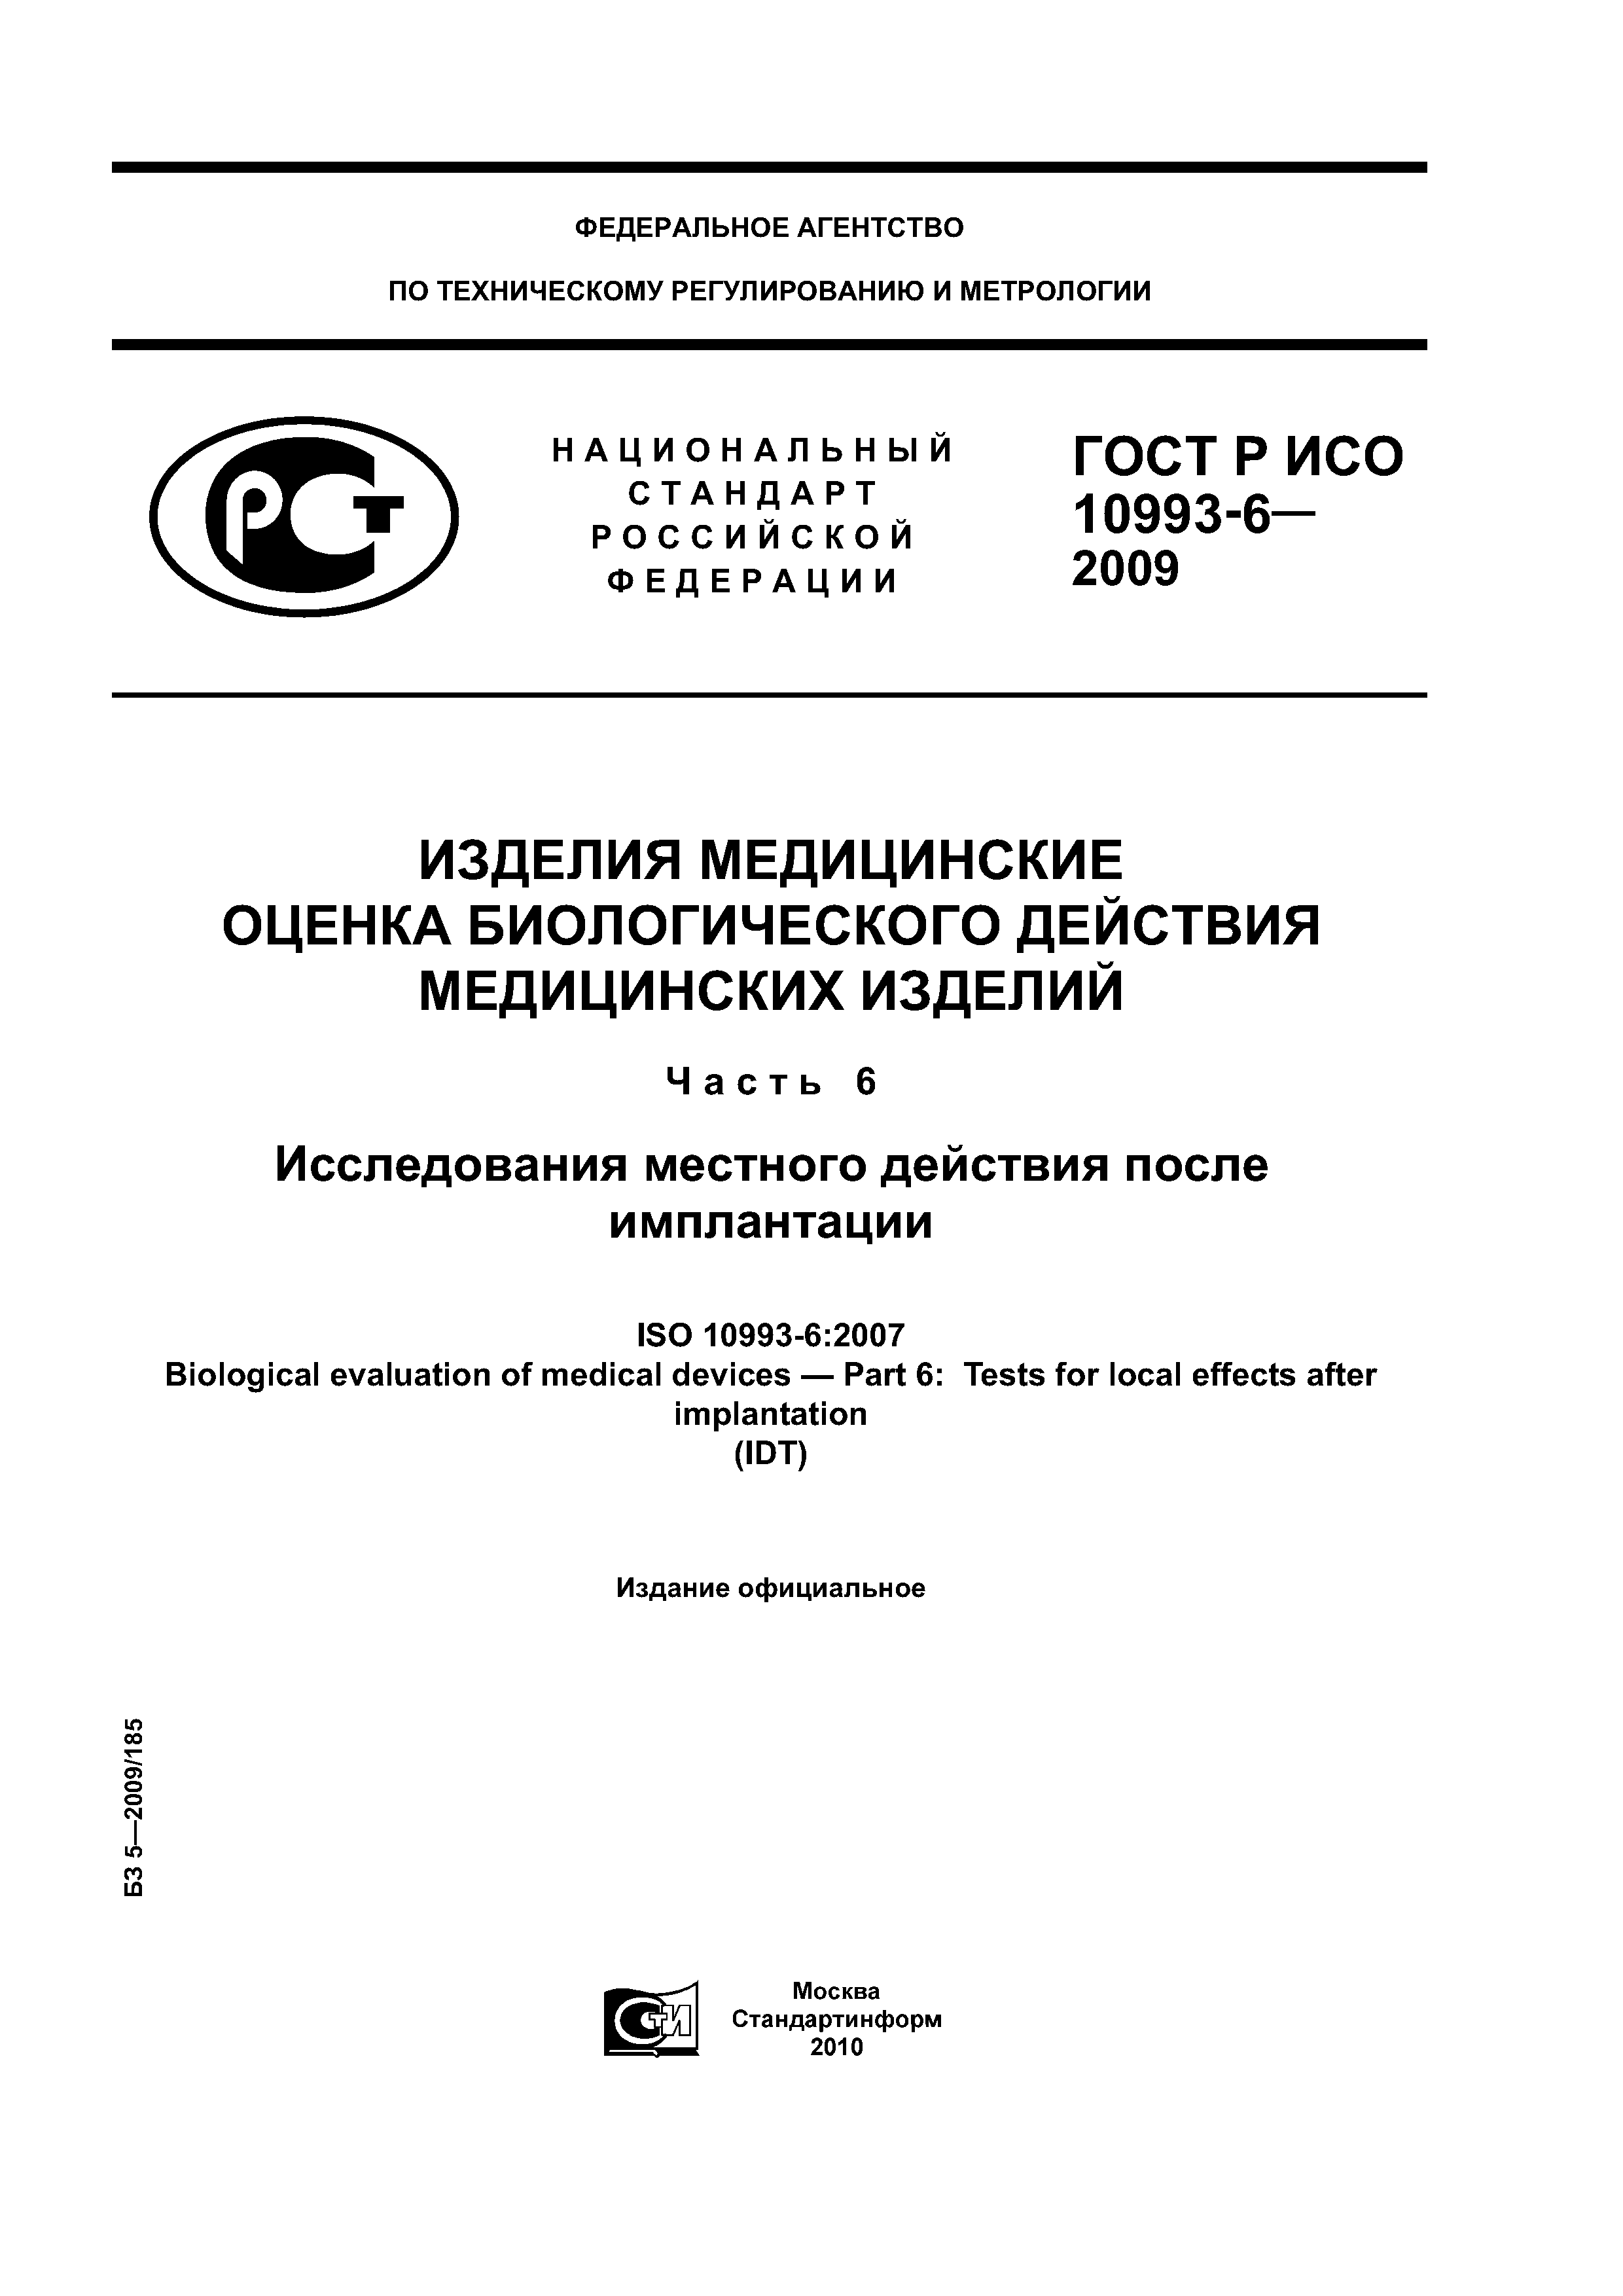 ГОСТ Р ИСО 10993-6-2009